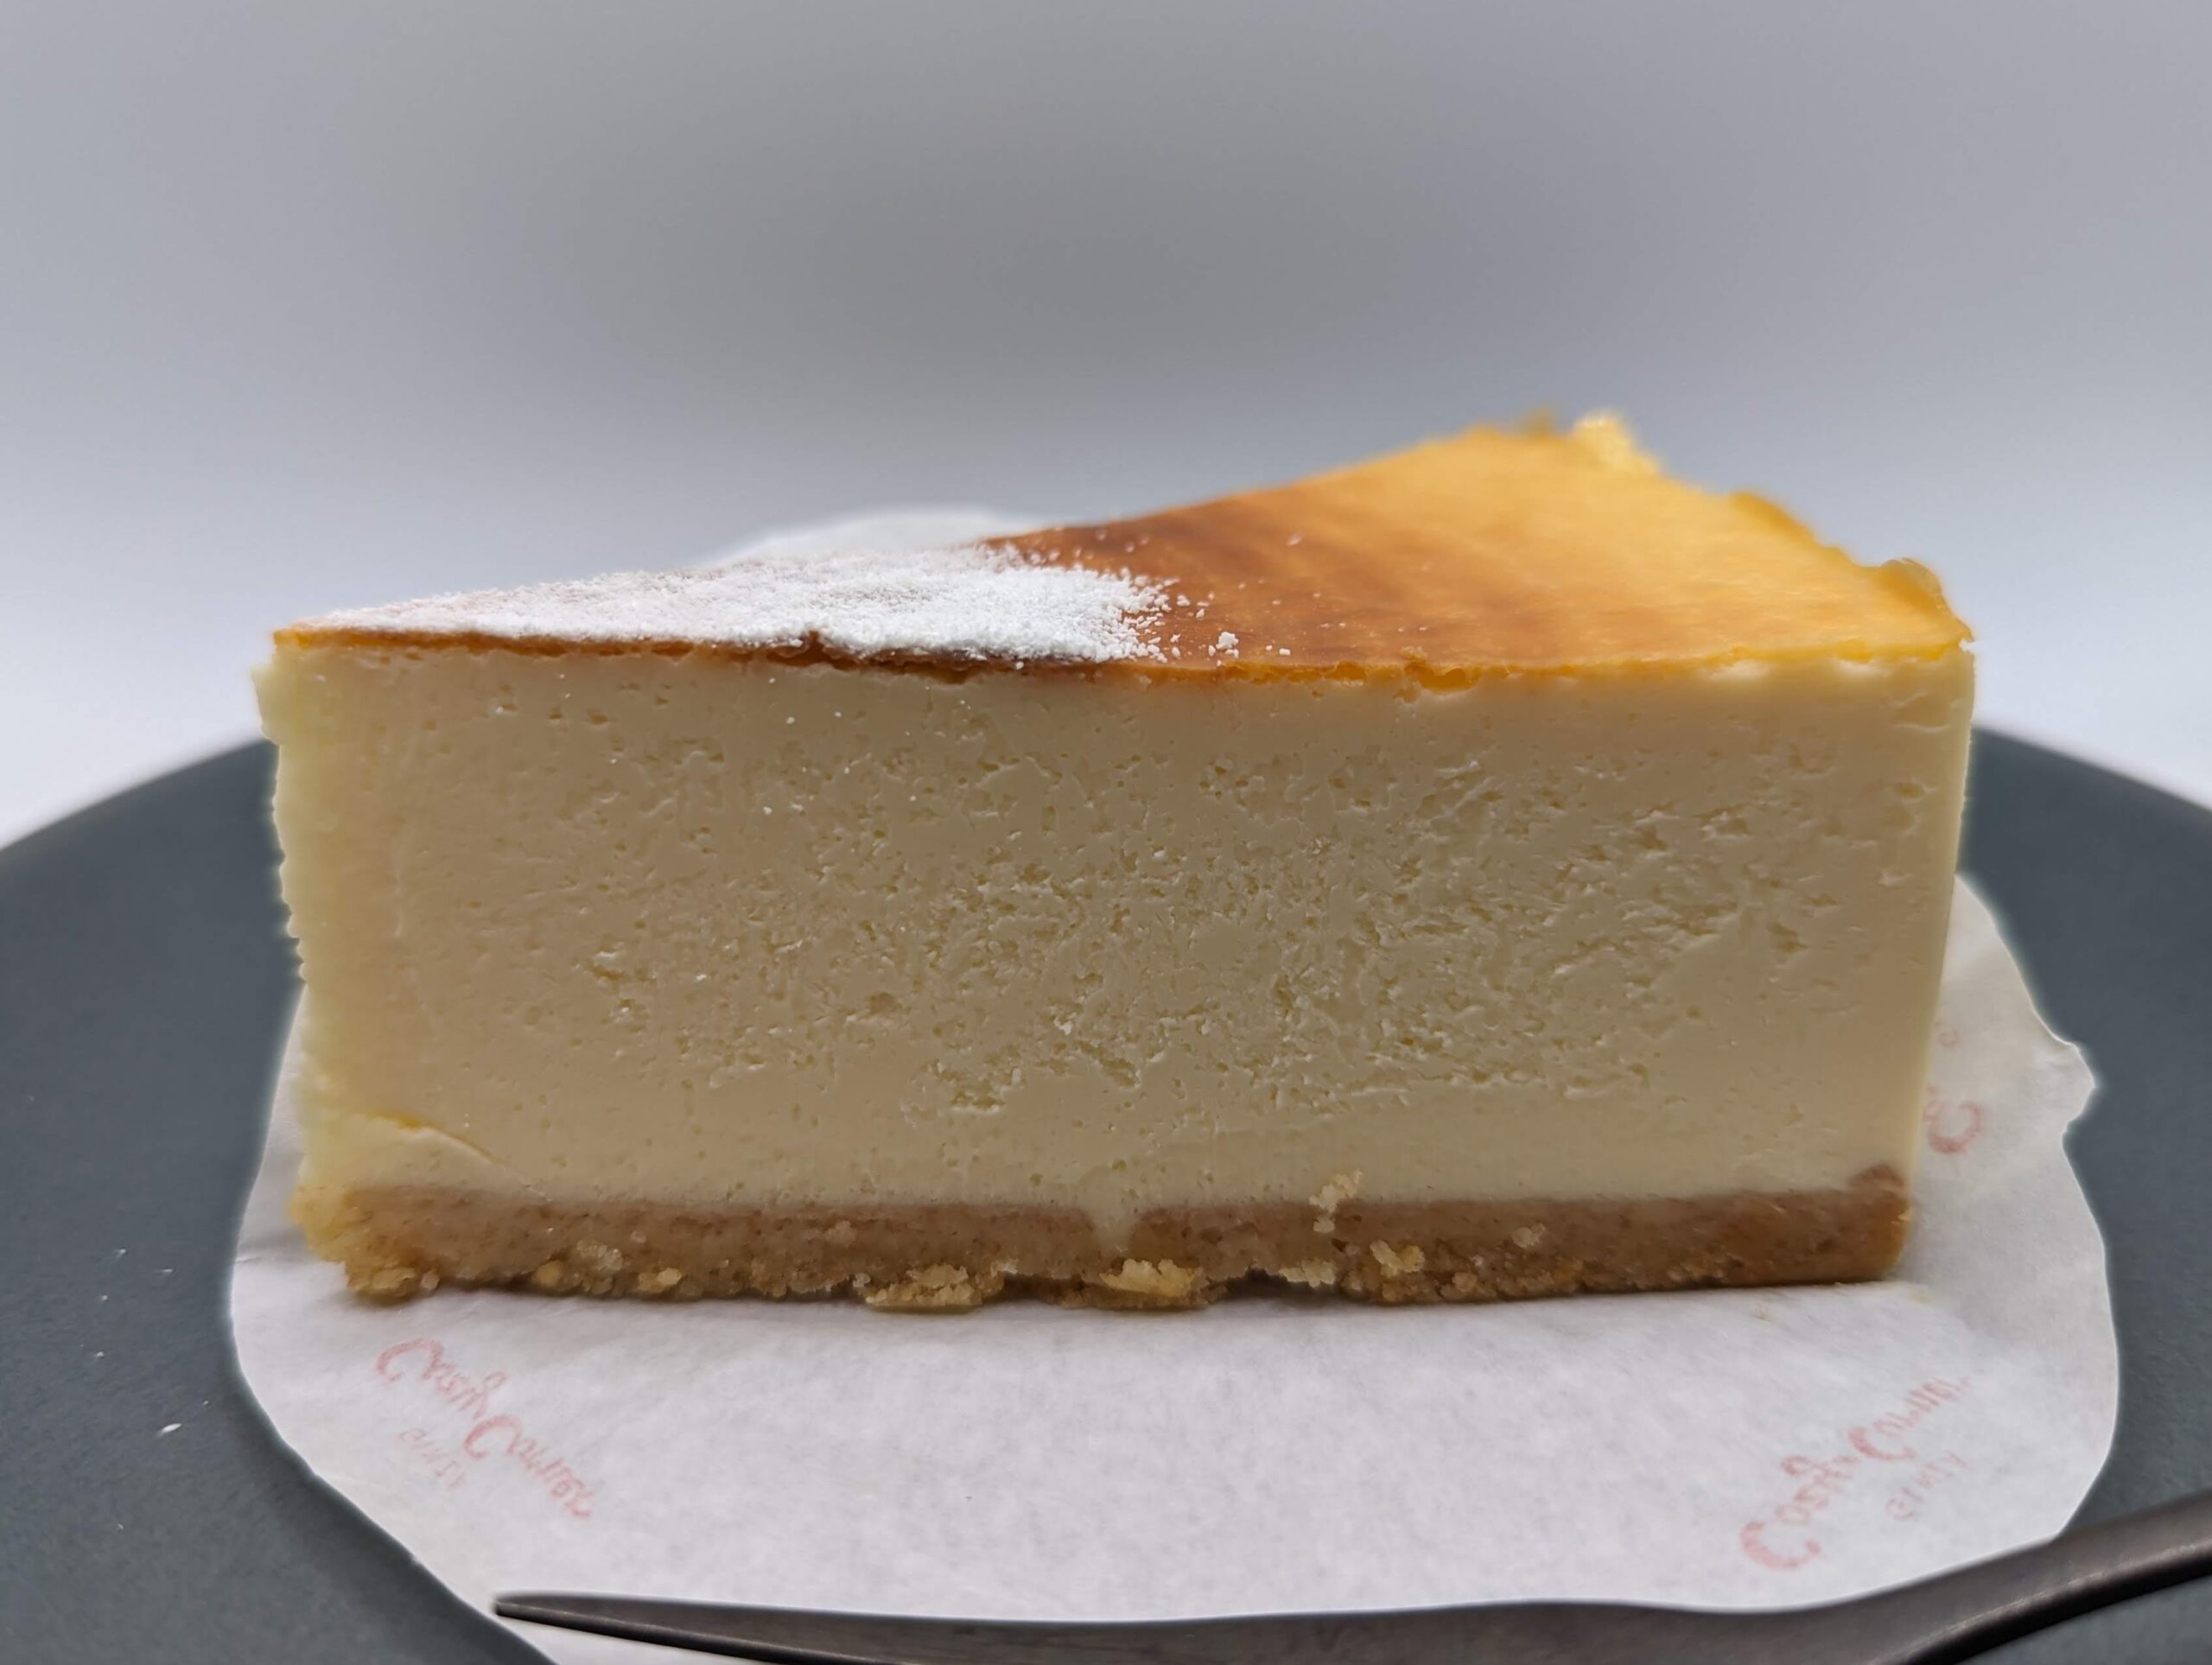 銀座コージーコーナーの「なめらか食感のベイクドチーズ」の写真